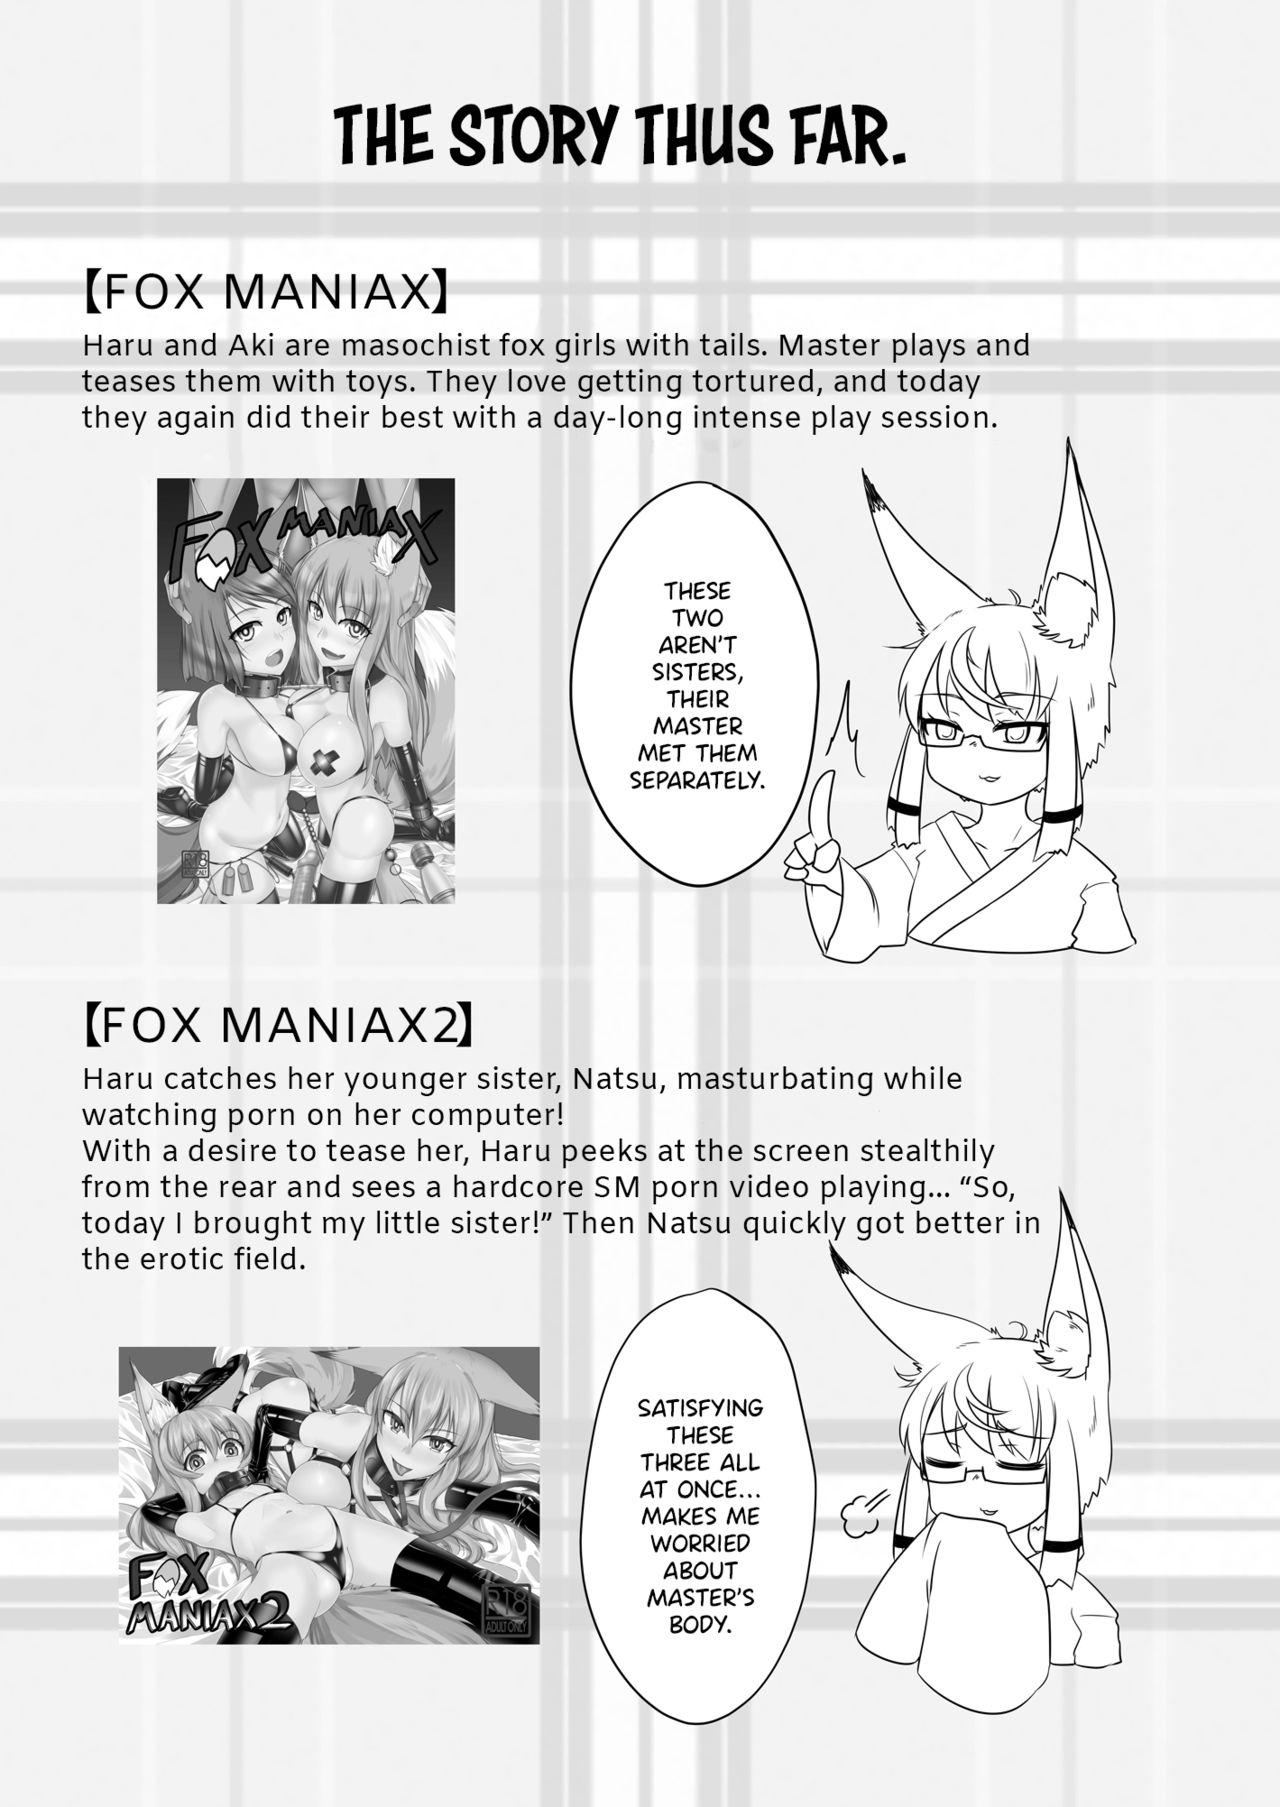 FOX MANIAX3 2